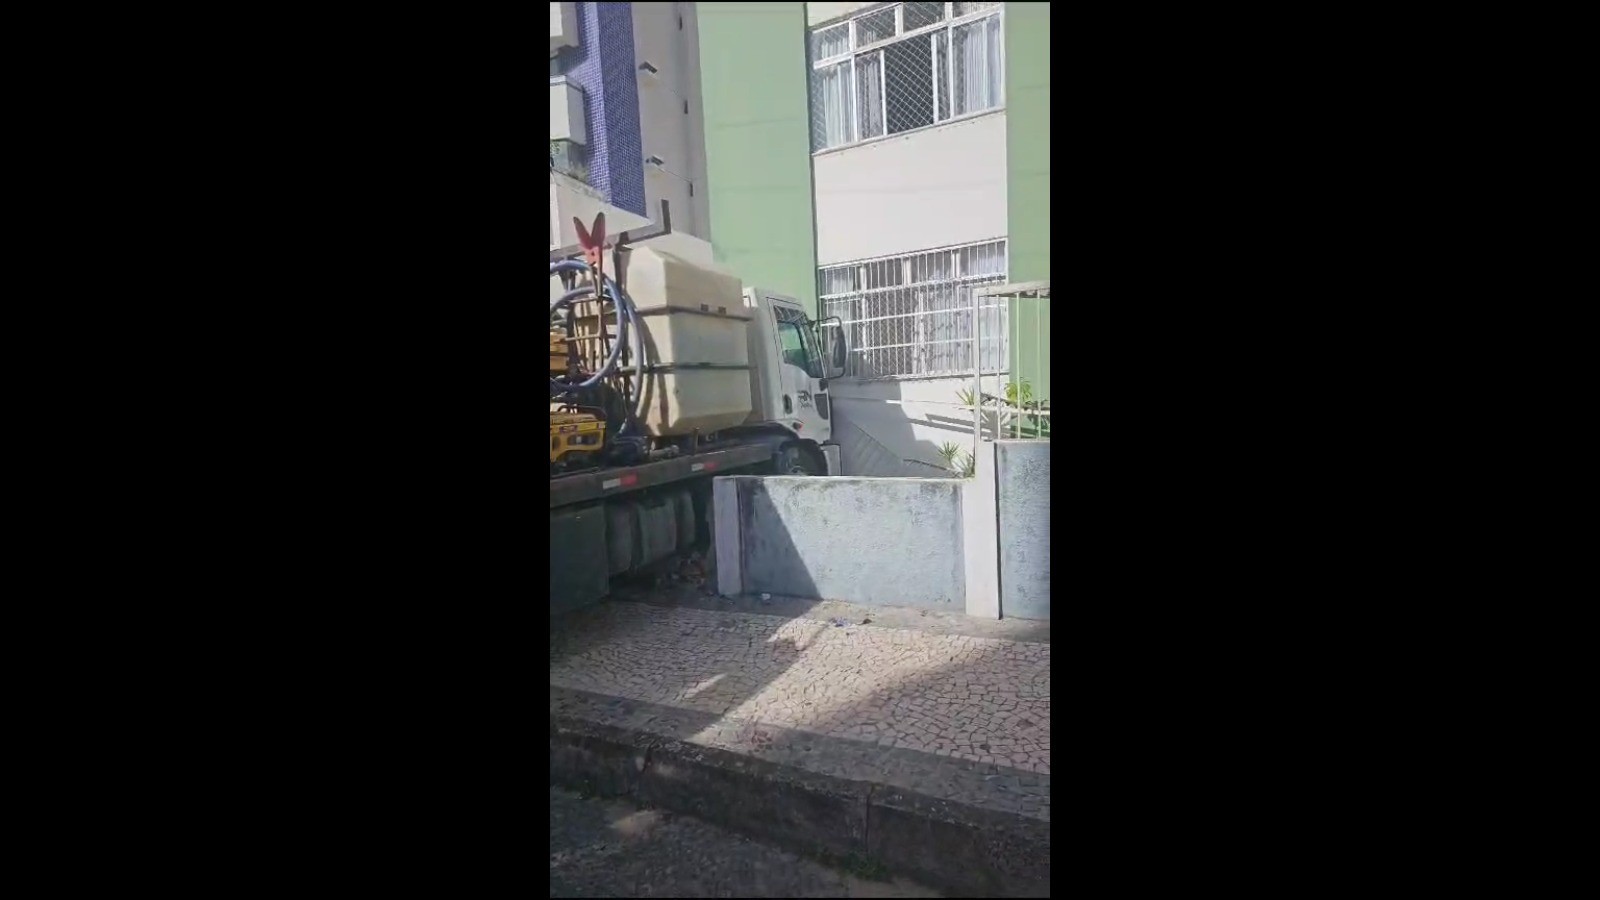 Caminhão desgovernado sai de garagem, arrasta carro e invade prédio em bairro de classe média alta de Salvador